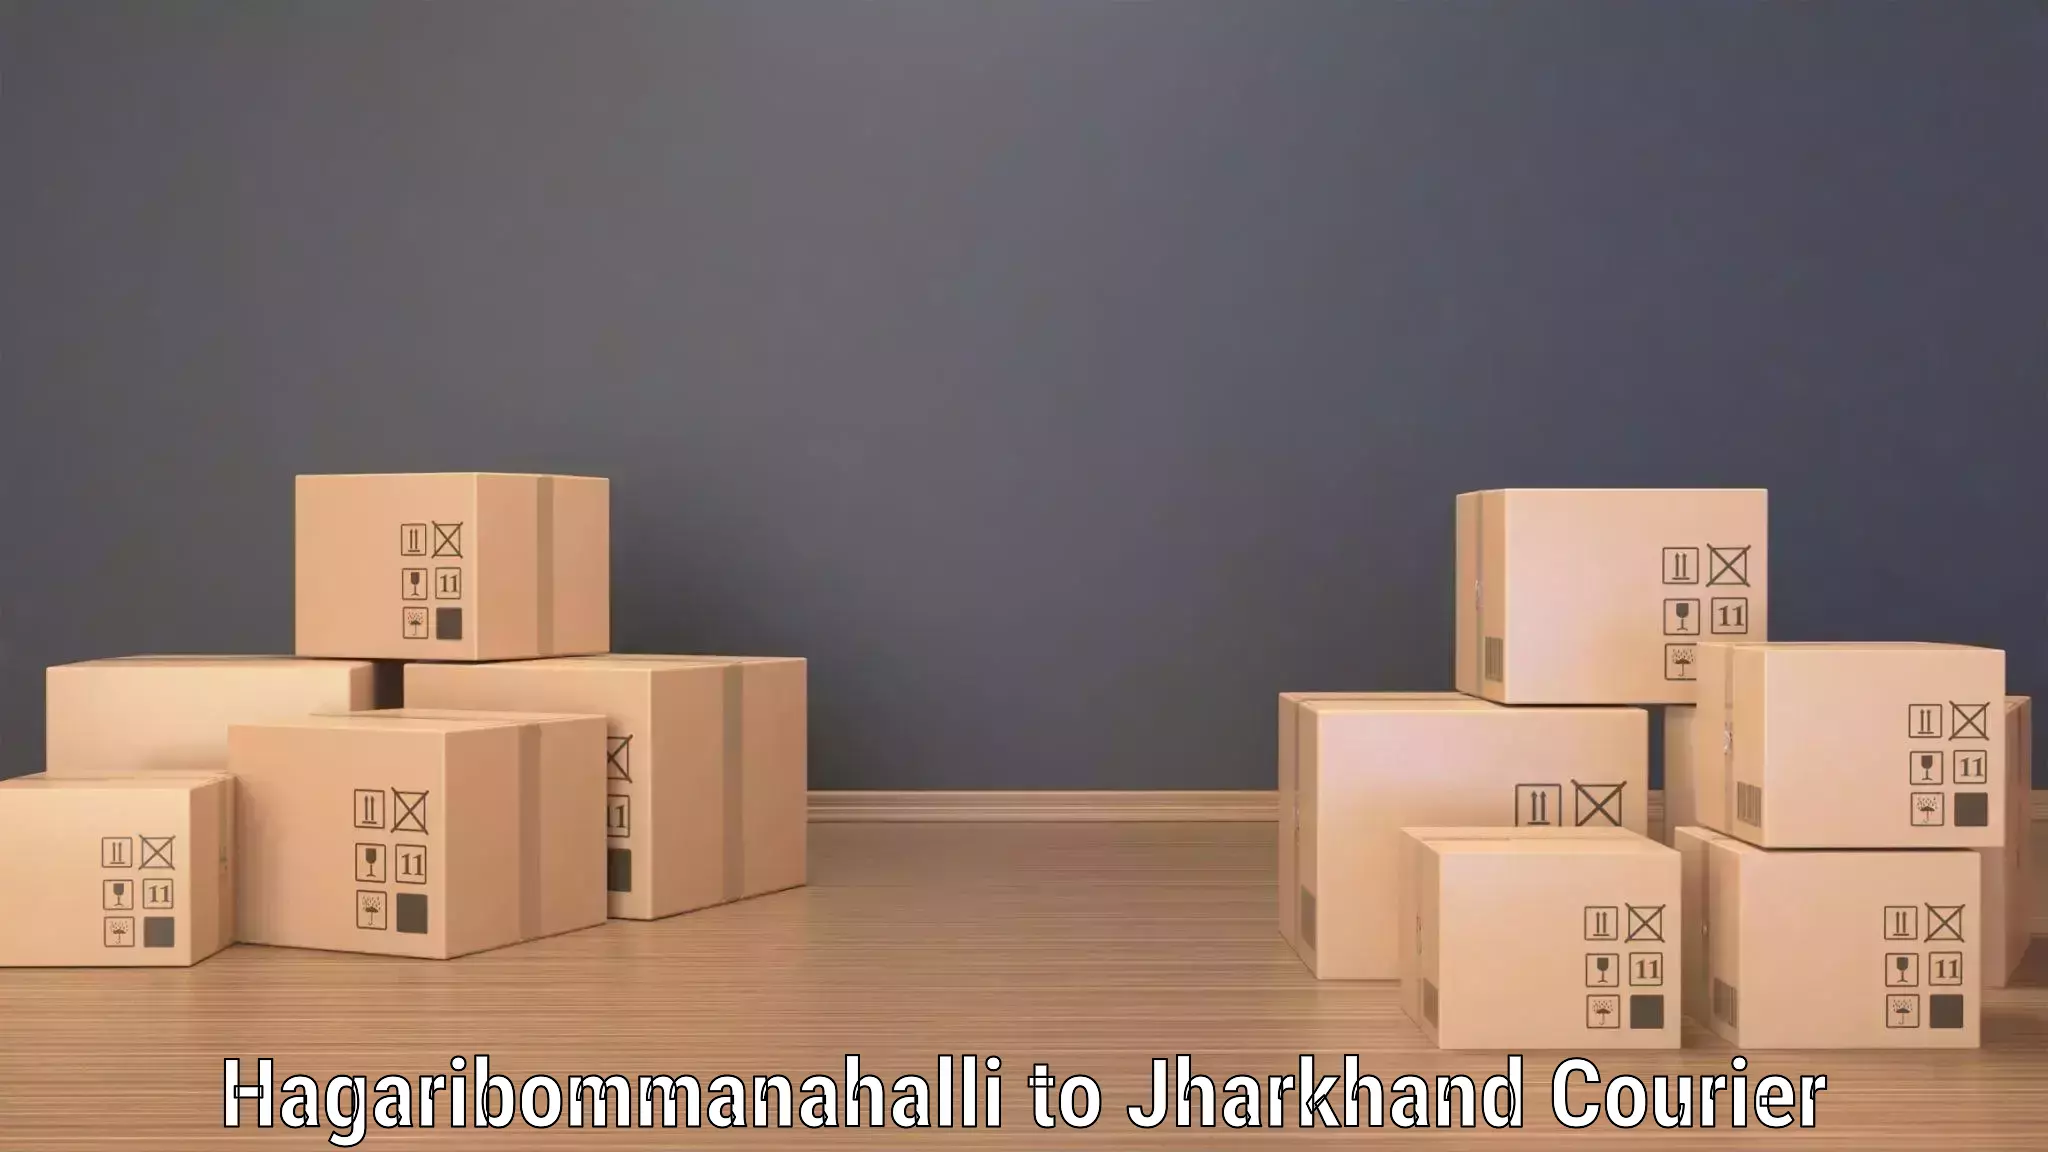 Digital shipping tools Hagaribommanahalli to Chouparan